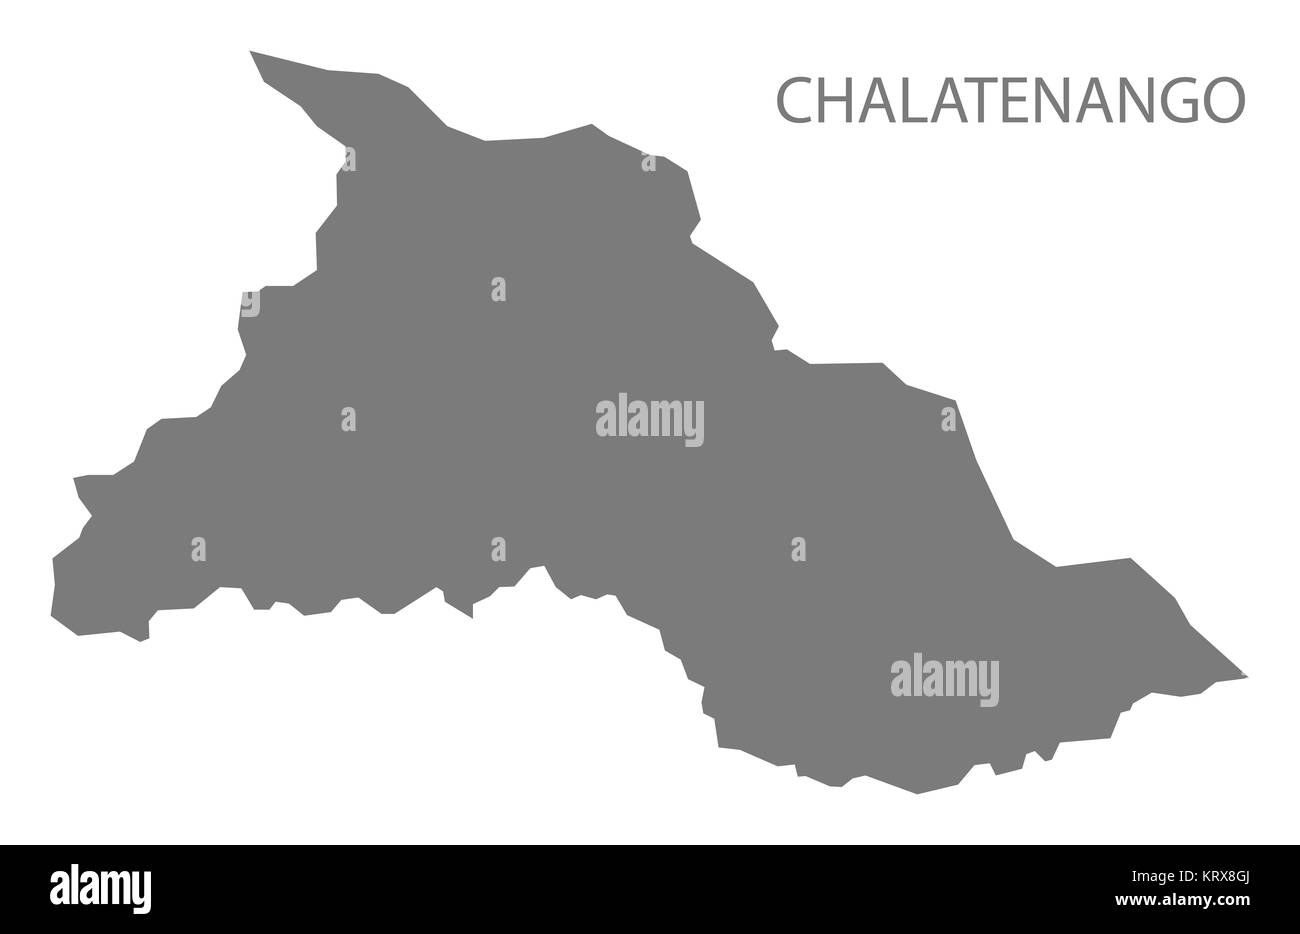 Chalatenango El Salvador Map grey Stock Photo